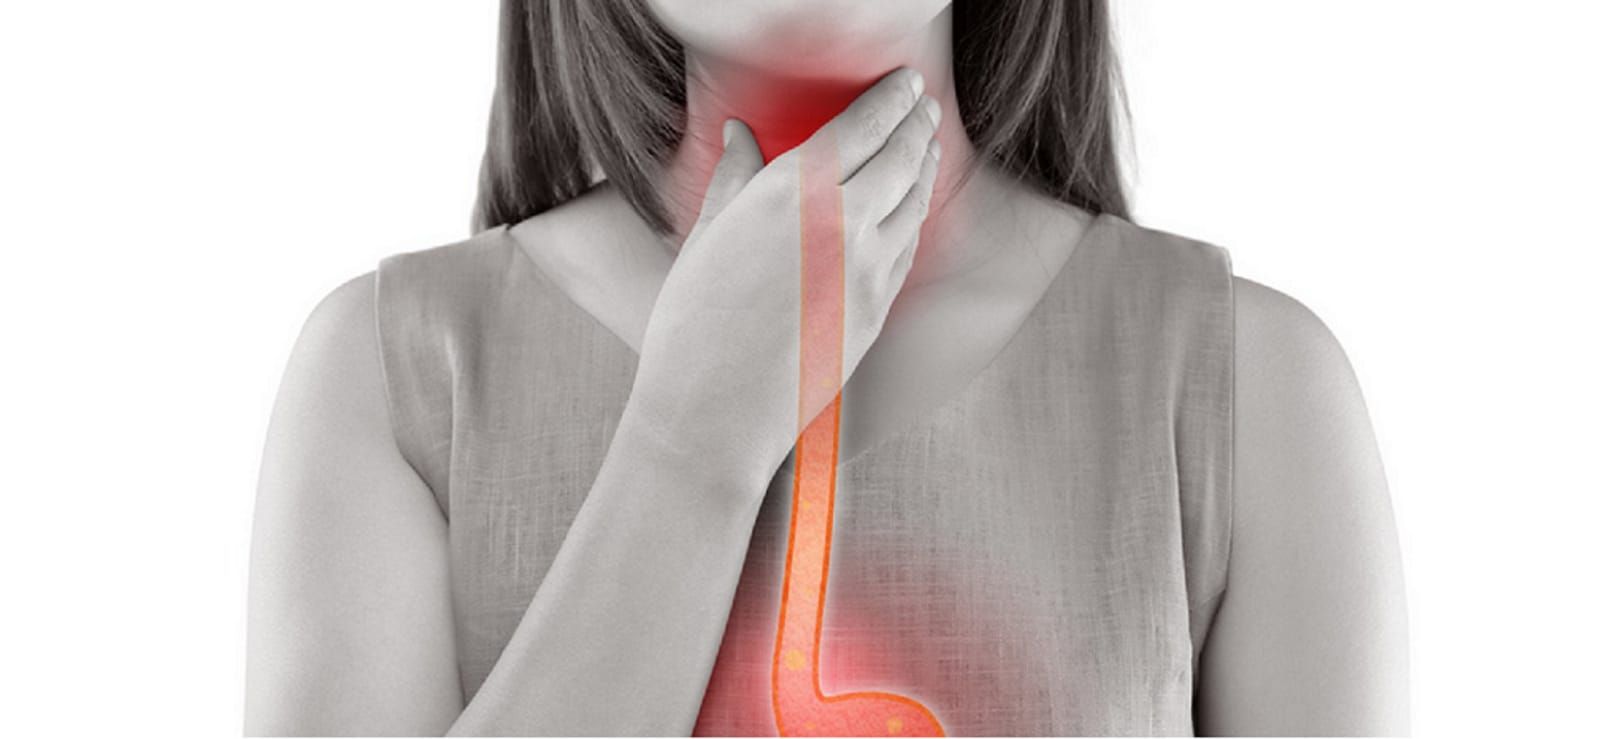 Ilustrasi sakit tenggorokan yang membuat penderitanya kesulitan menelan makanan.